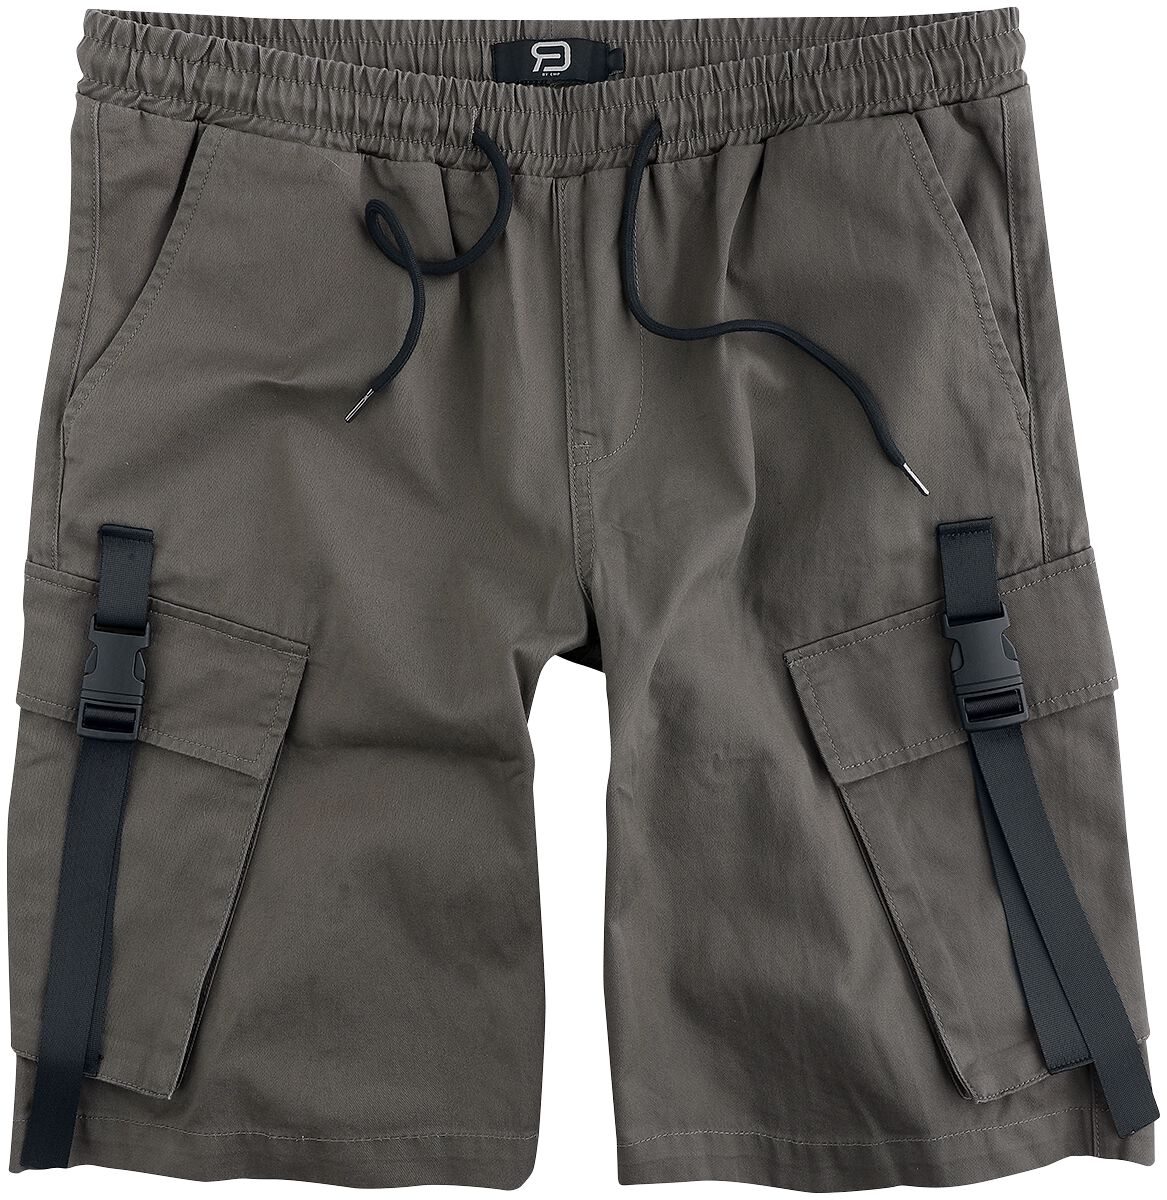 Short für Männer  khaki Shorts With Side Pockets and Strap Details von RED by EMP